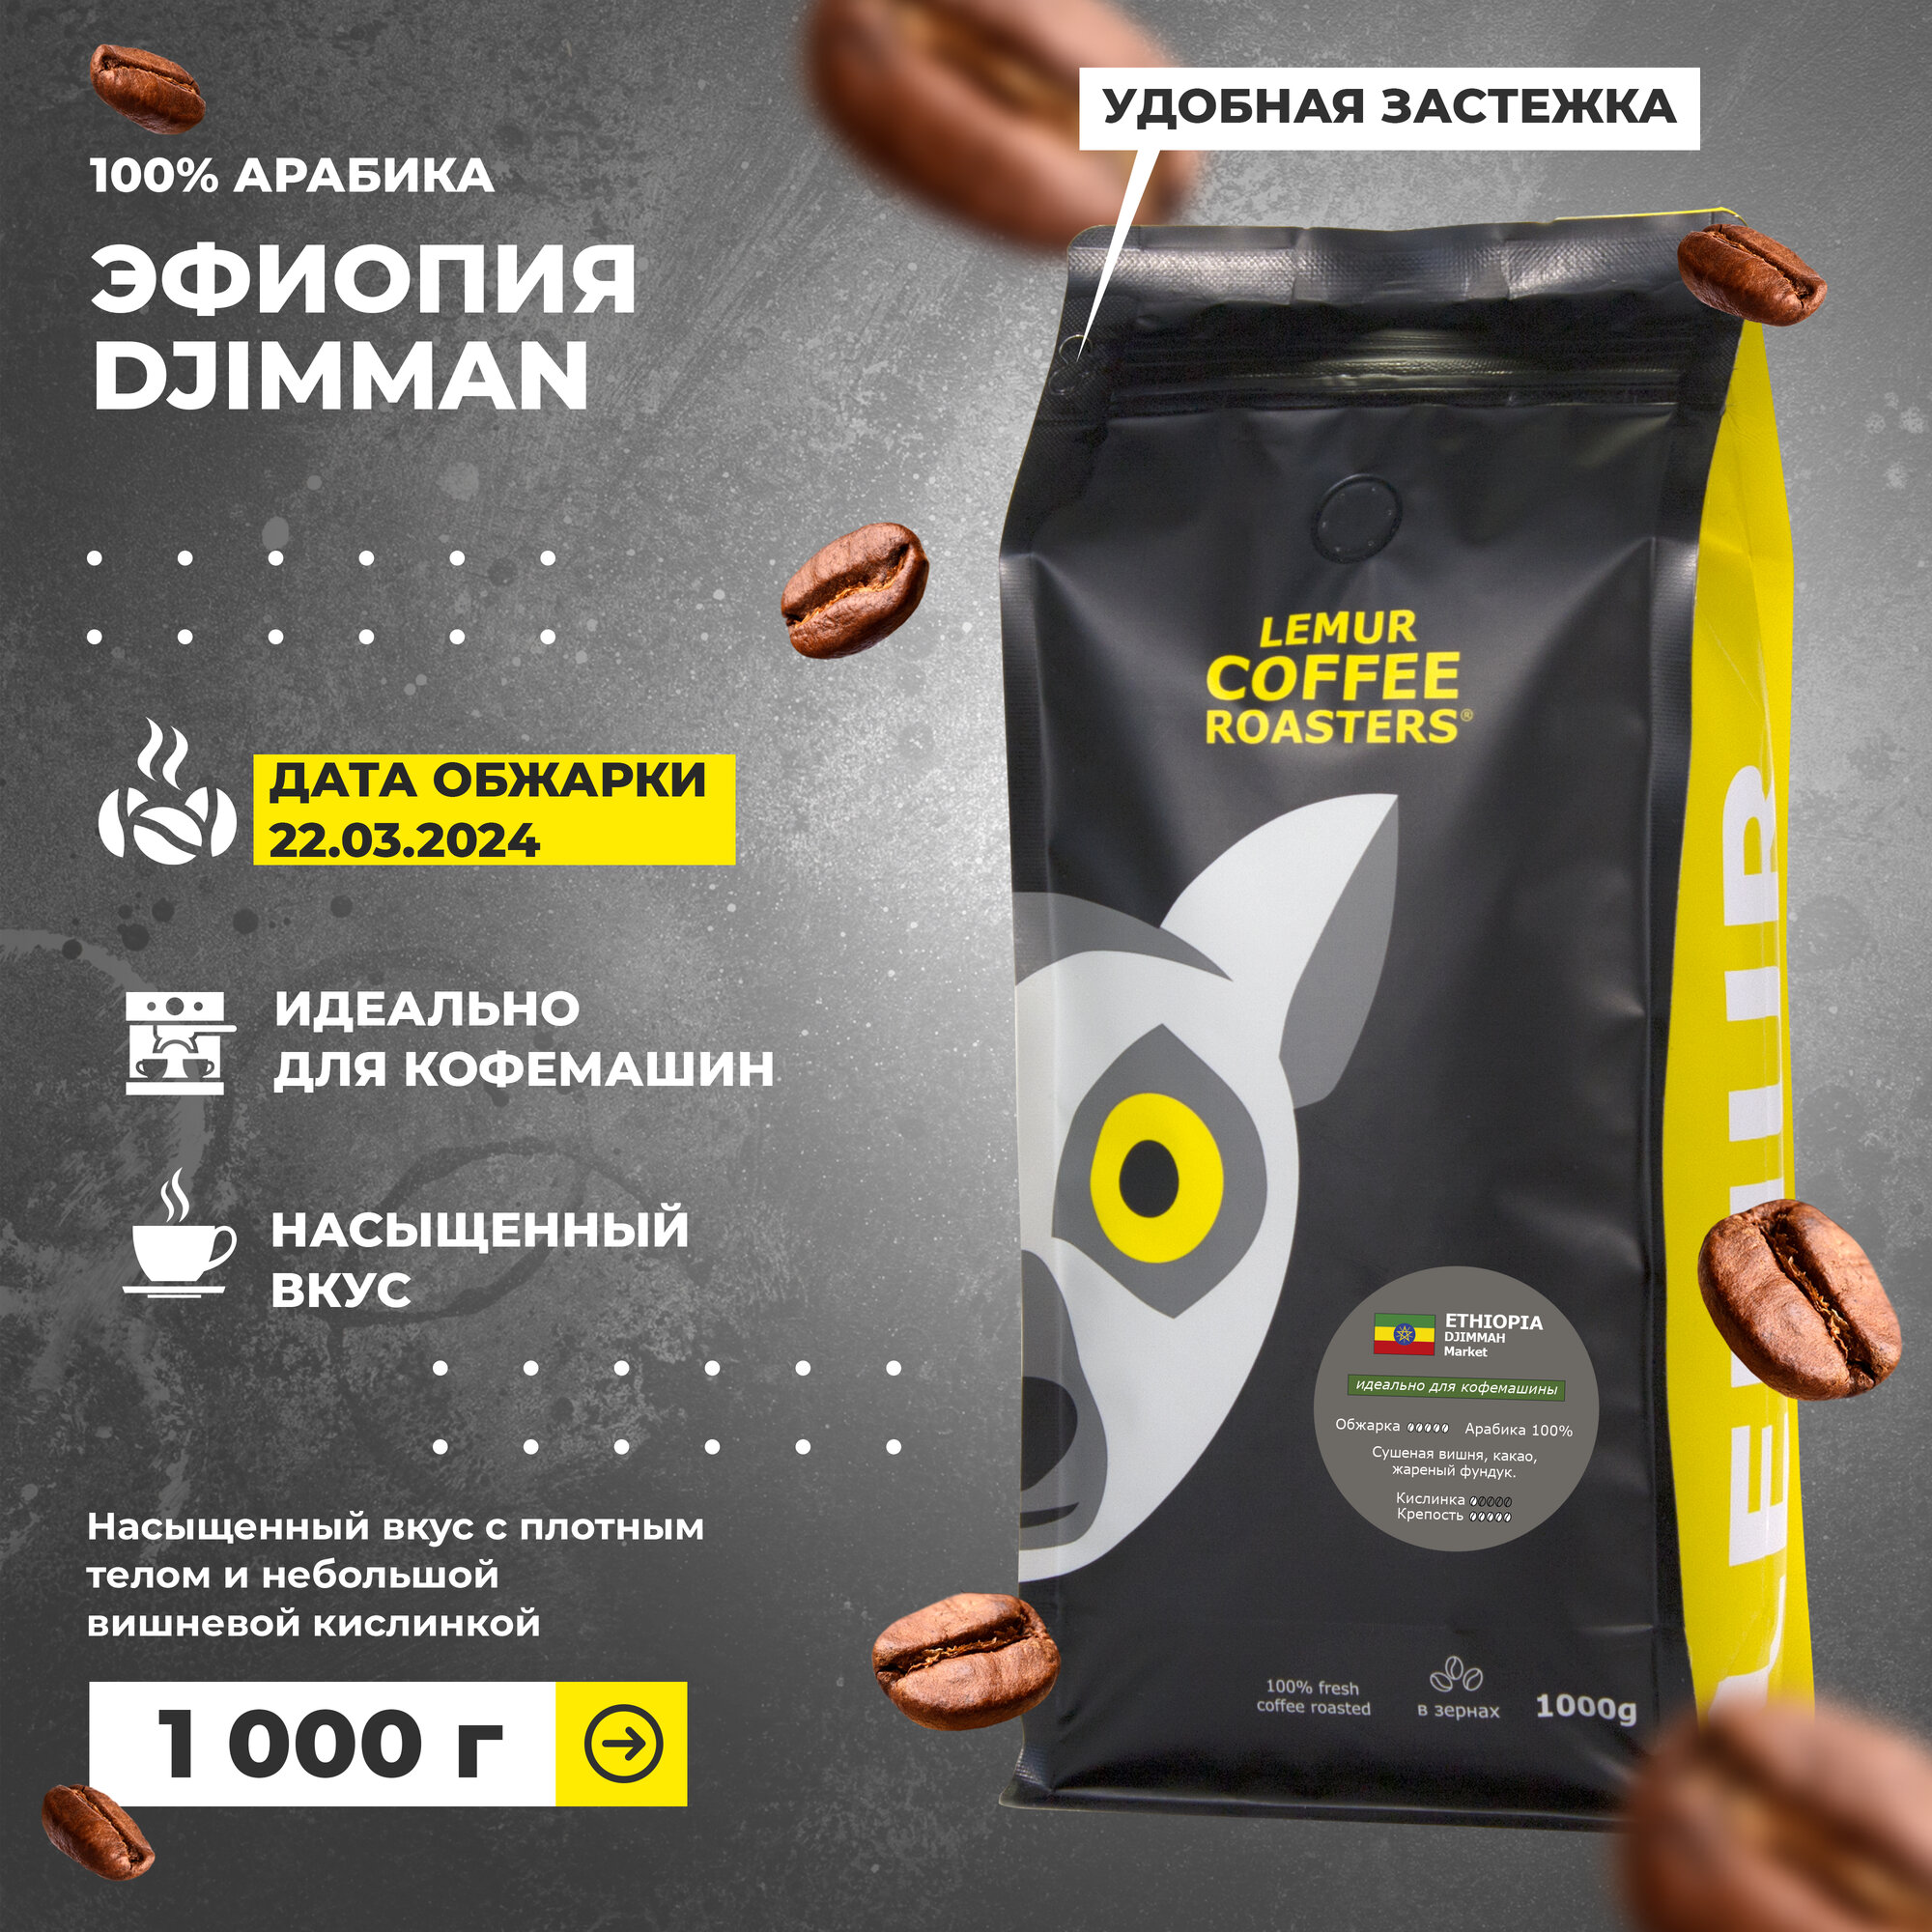 Кофе в зернах 1 кг эфиопия джимма 100% Арабика свежая обжарка MARKET, 1 кг дата обжарки 07.03.2024